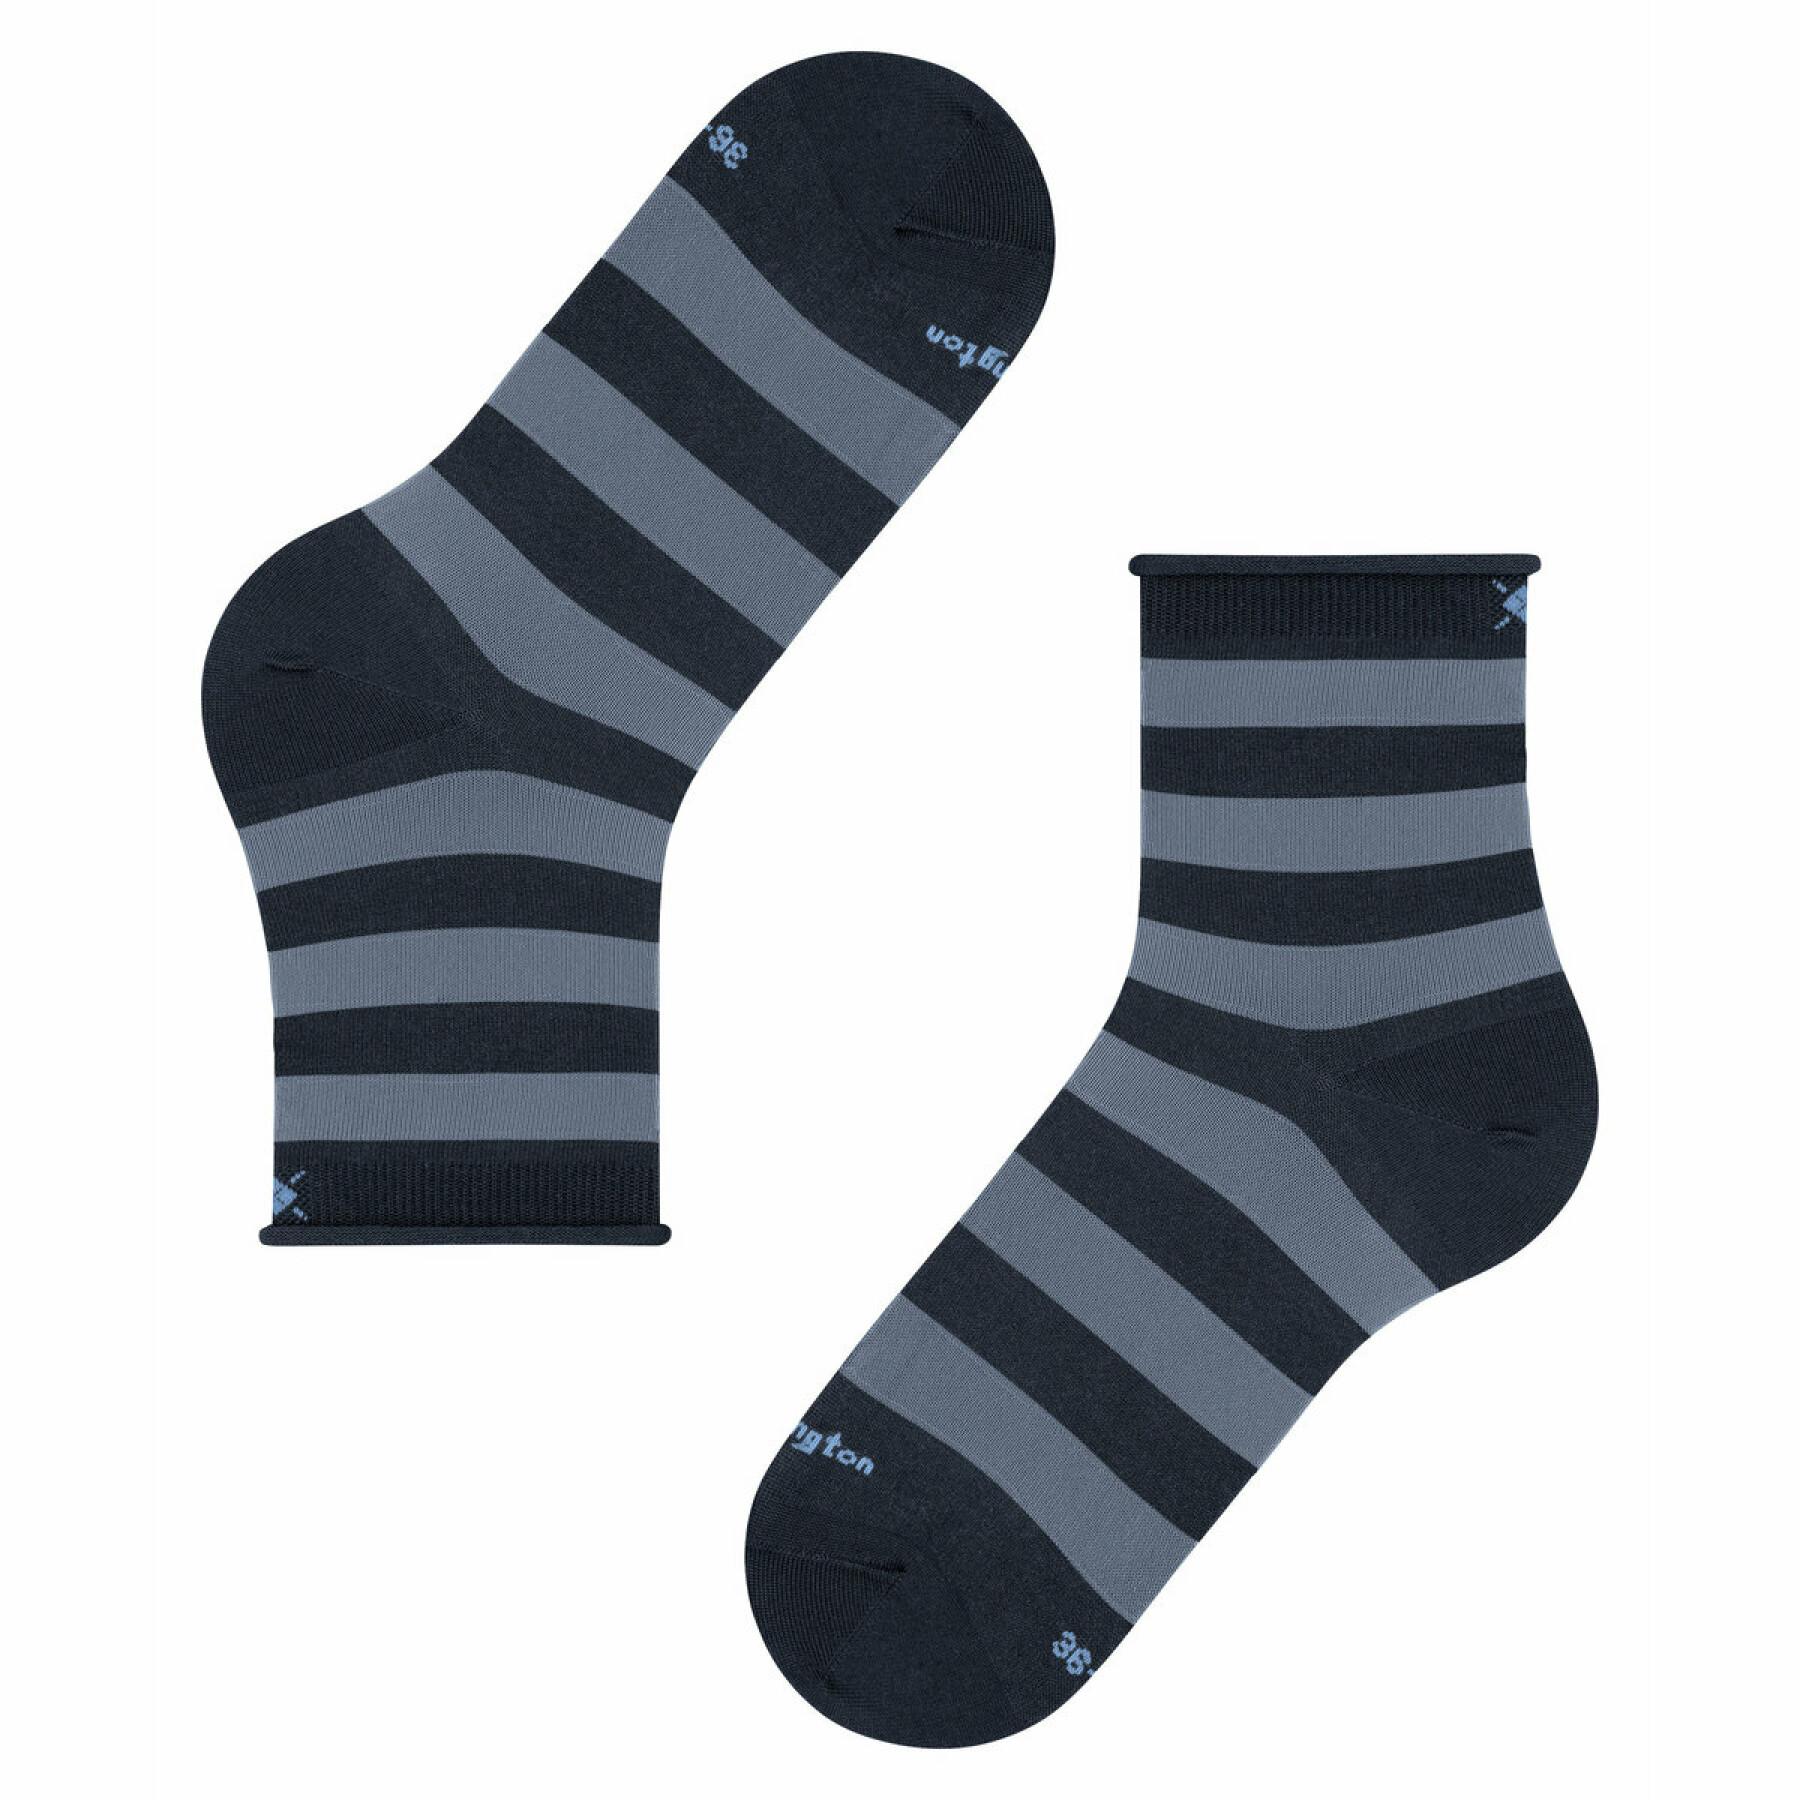 Women's socks Burlington Aberdeen